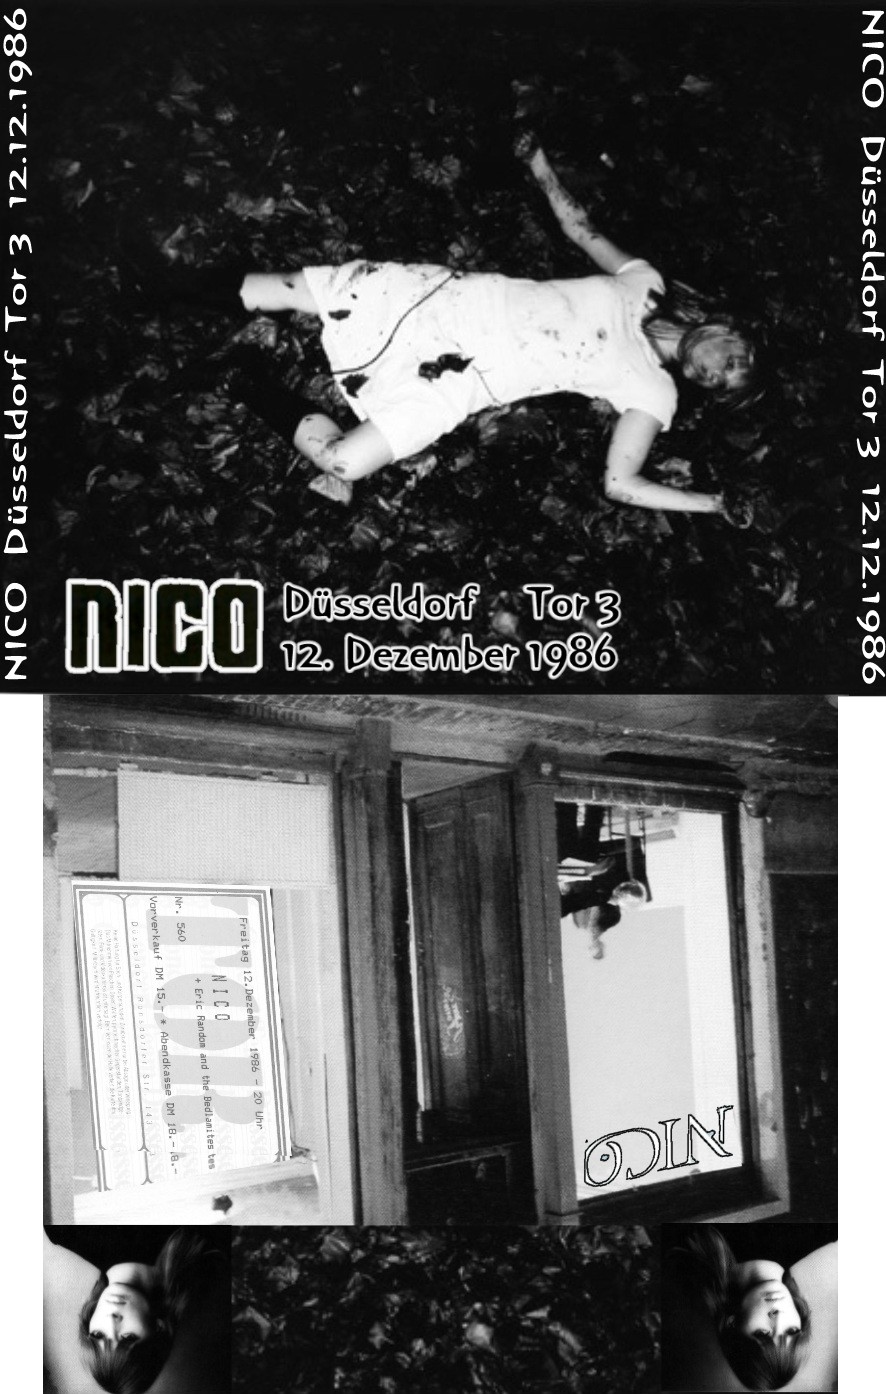 Nico1986-12Tor3DusseldorfGermany (1).jpg